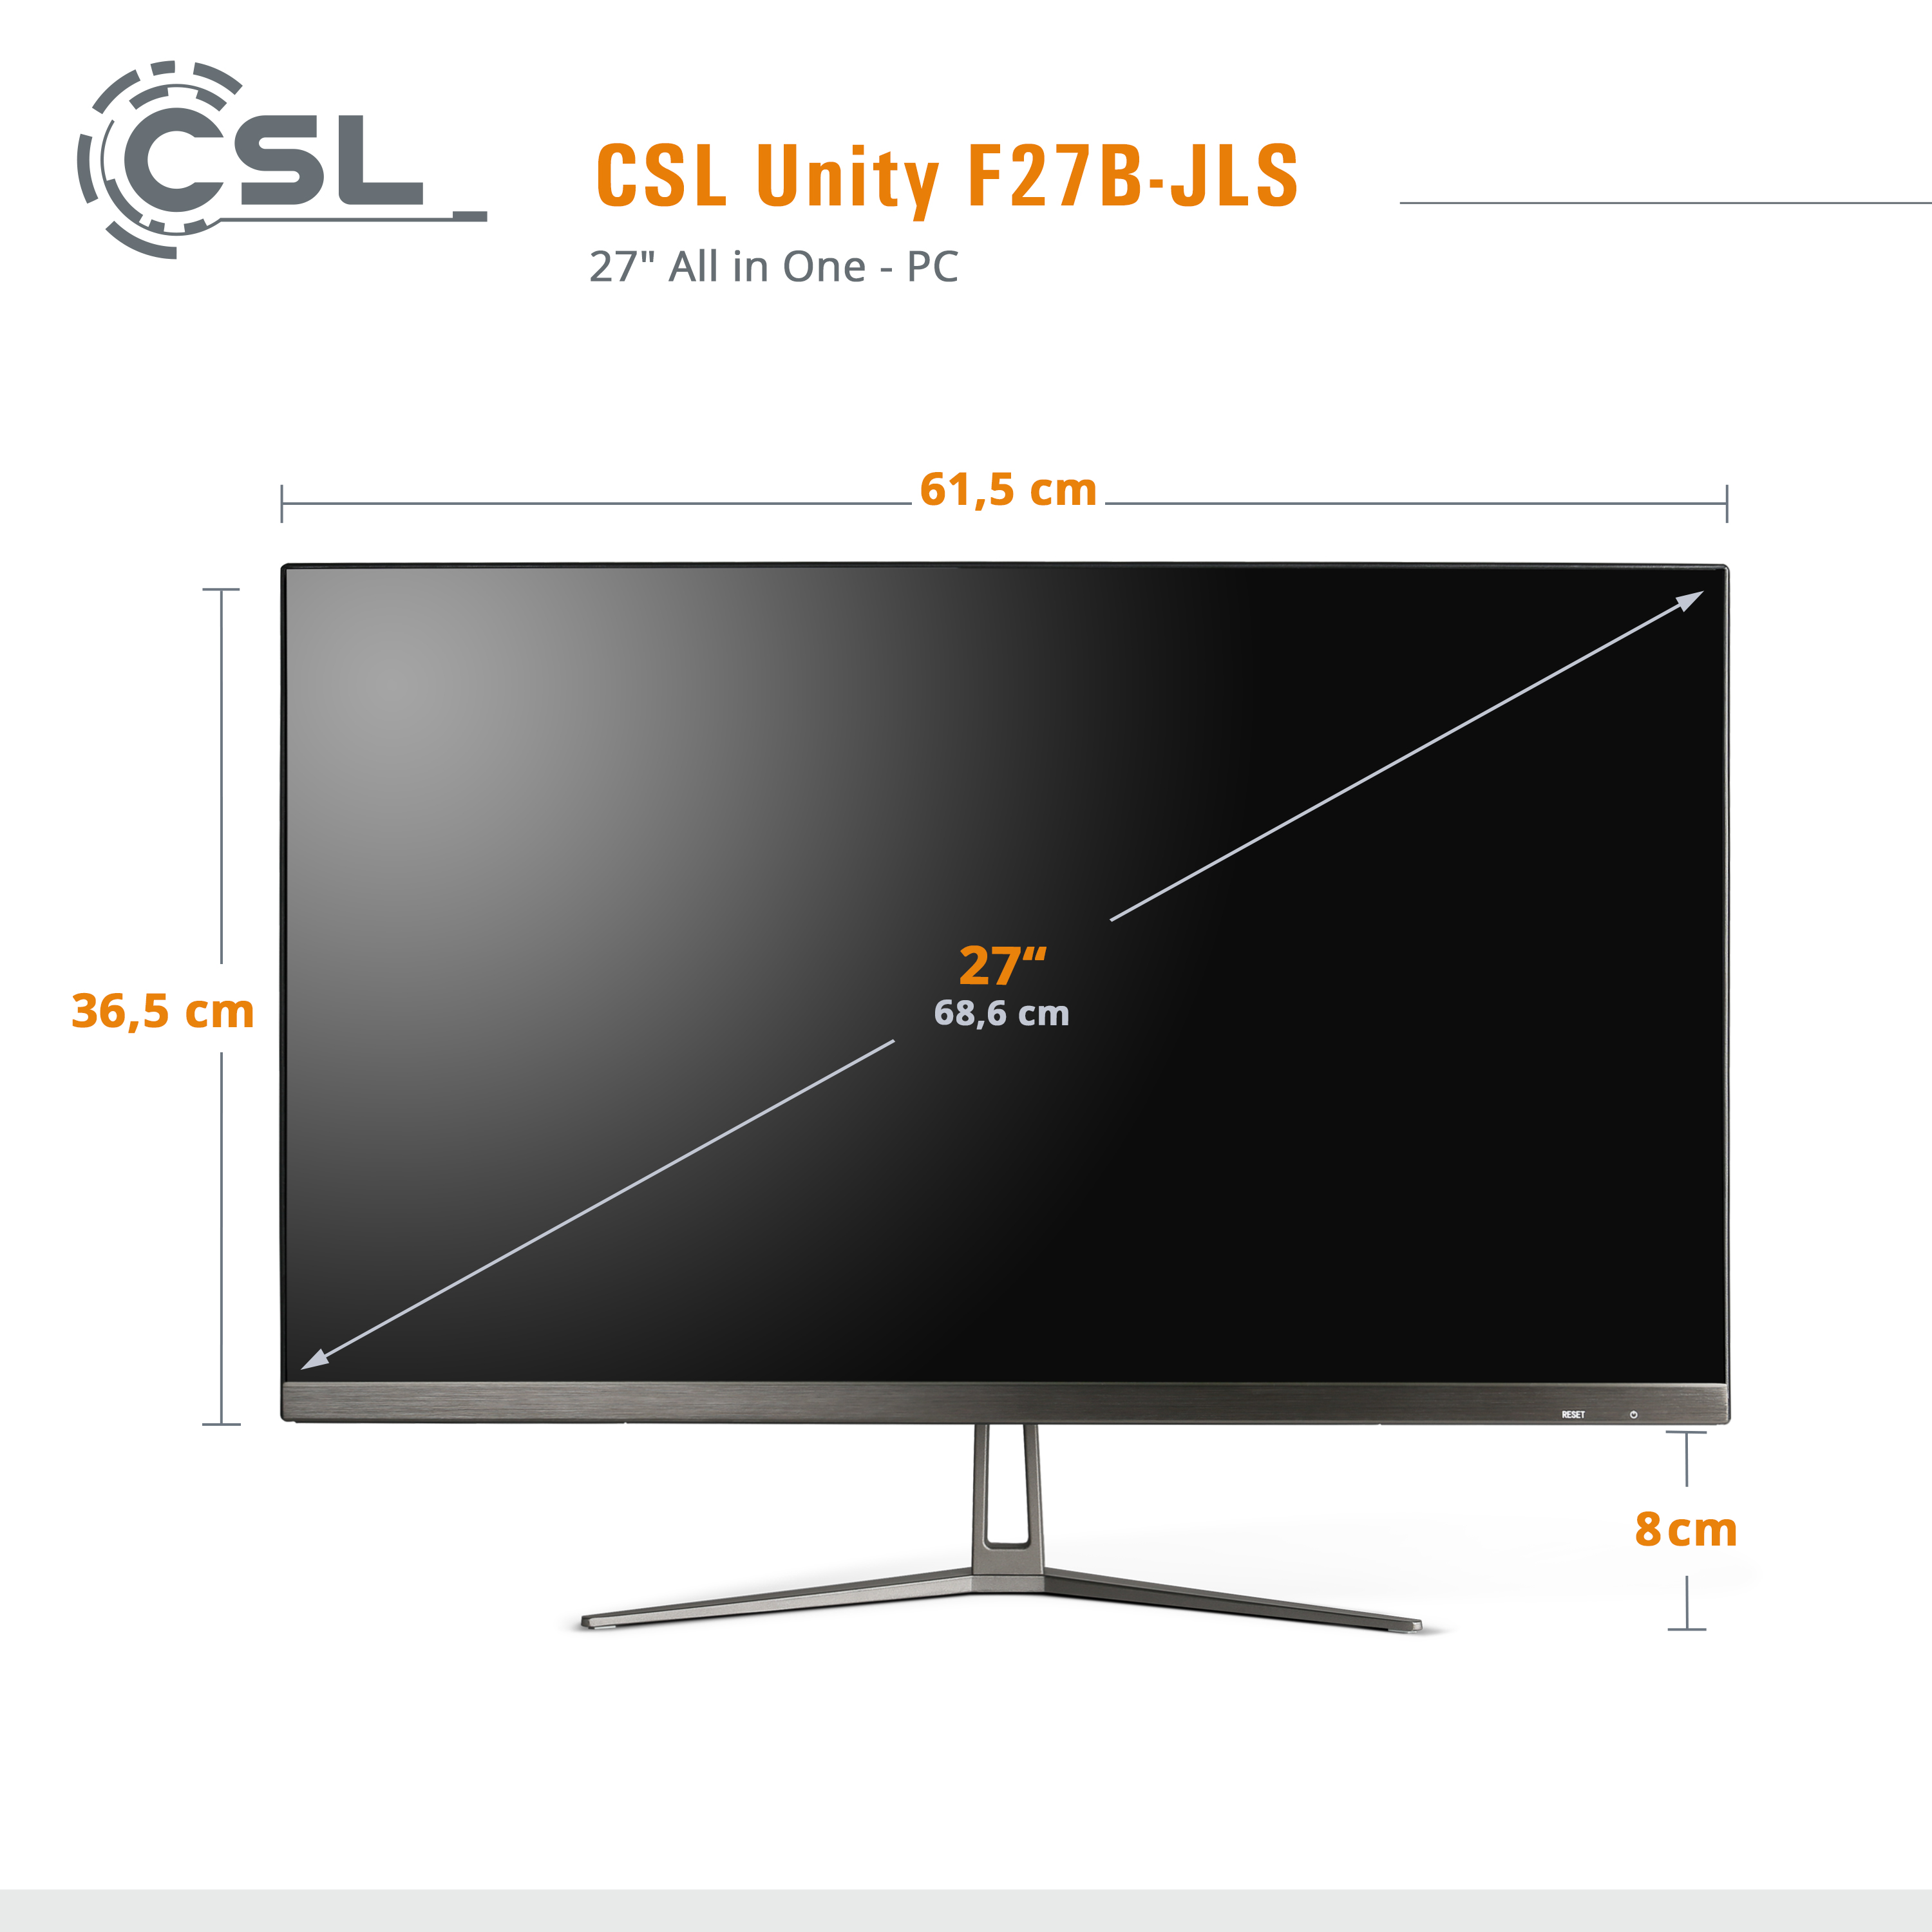 CSL Unity F27B-JLS Pentium 32 GB Win 32 schwarz GB 512 Zoll 512 Pro, / 10 Intel® / GB SSD, RAM, / UHD 27 RAM All-in-One-PC mit Display, GB Graphics